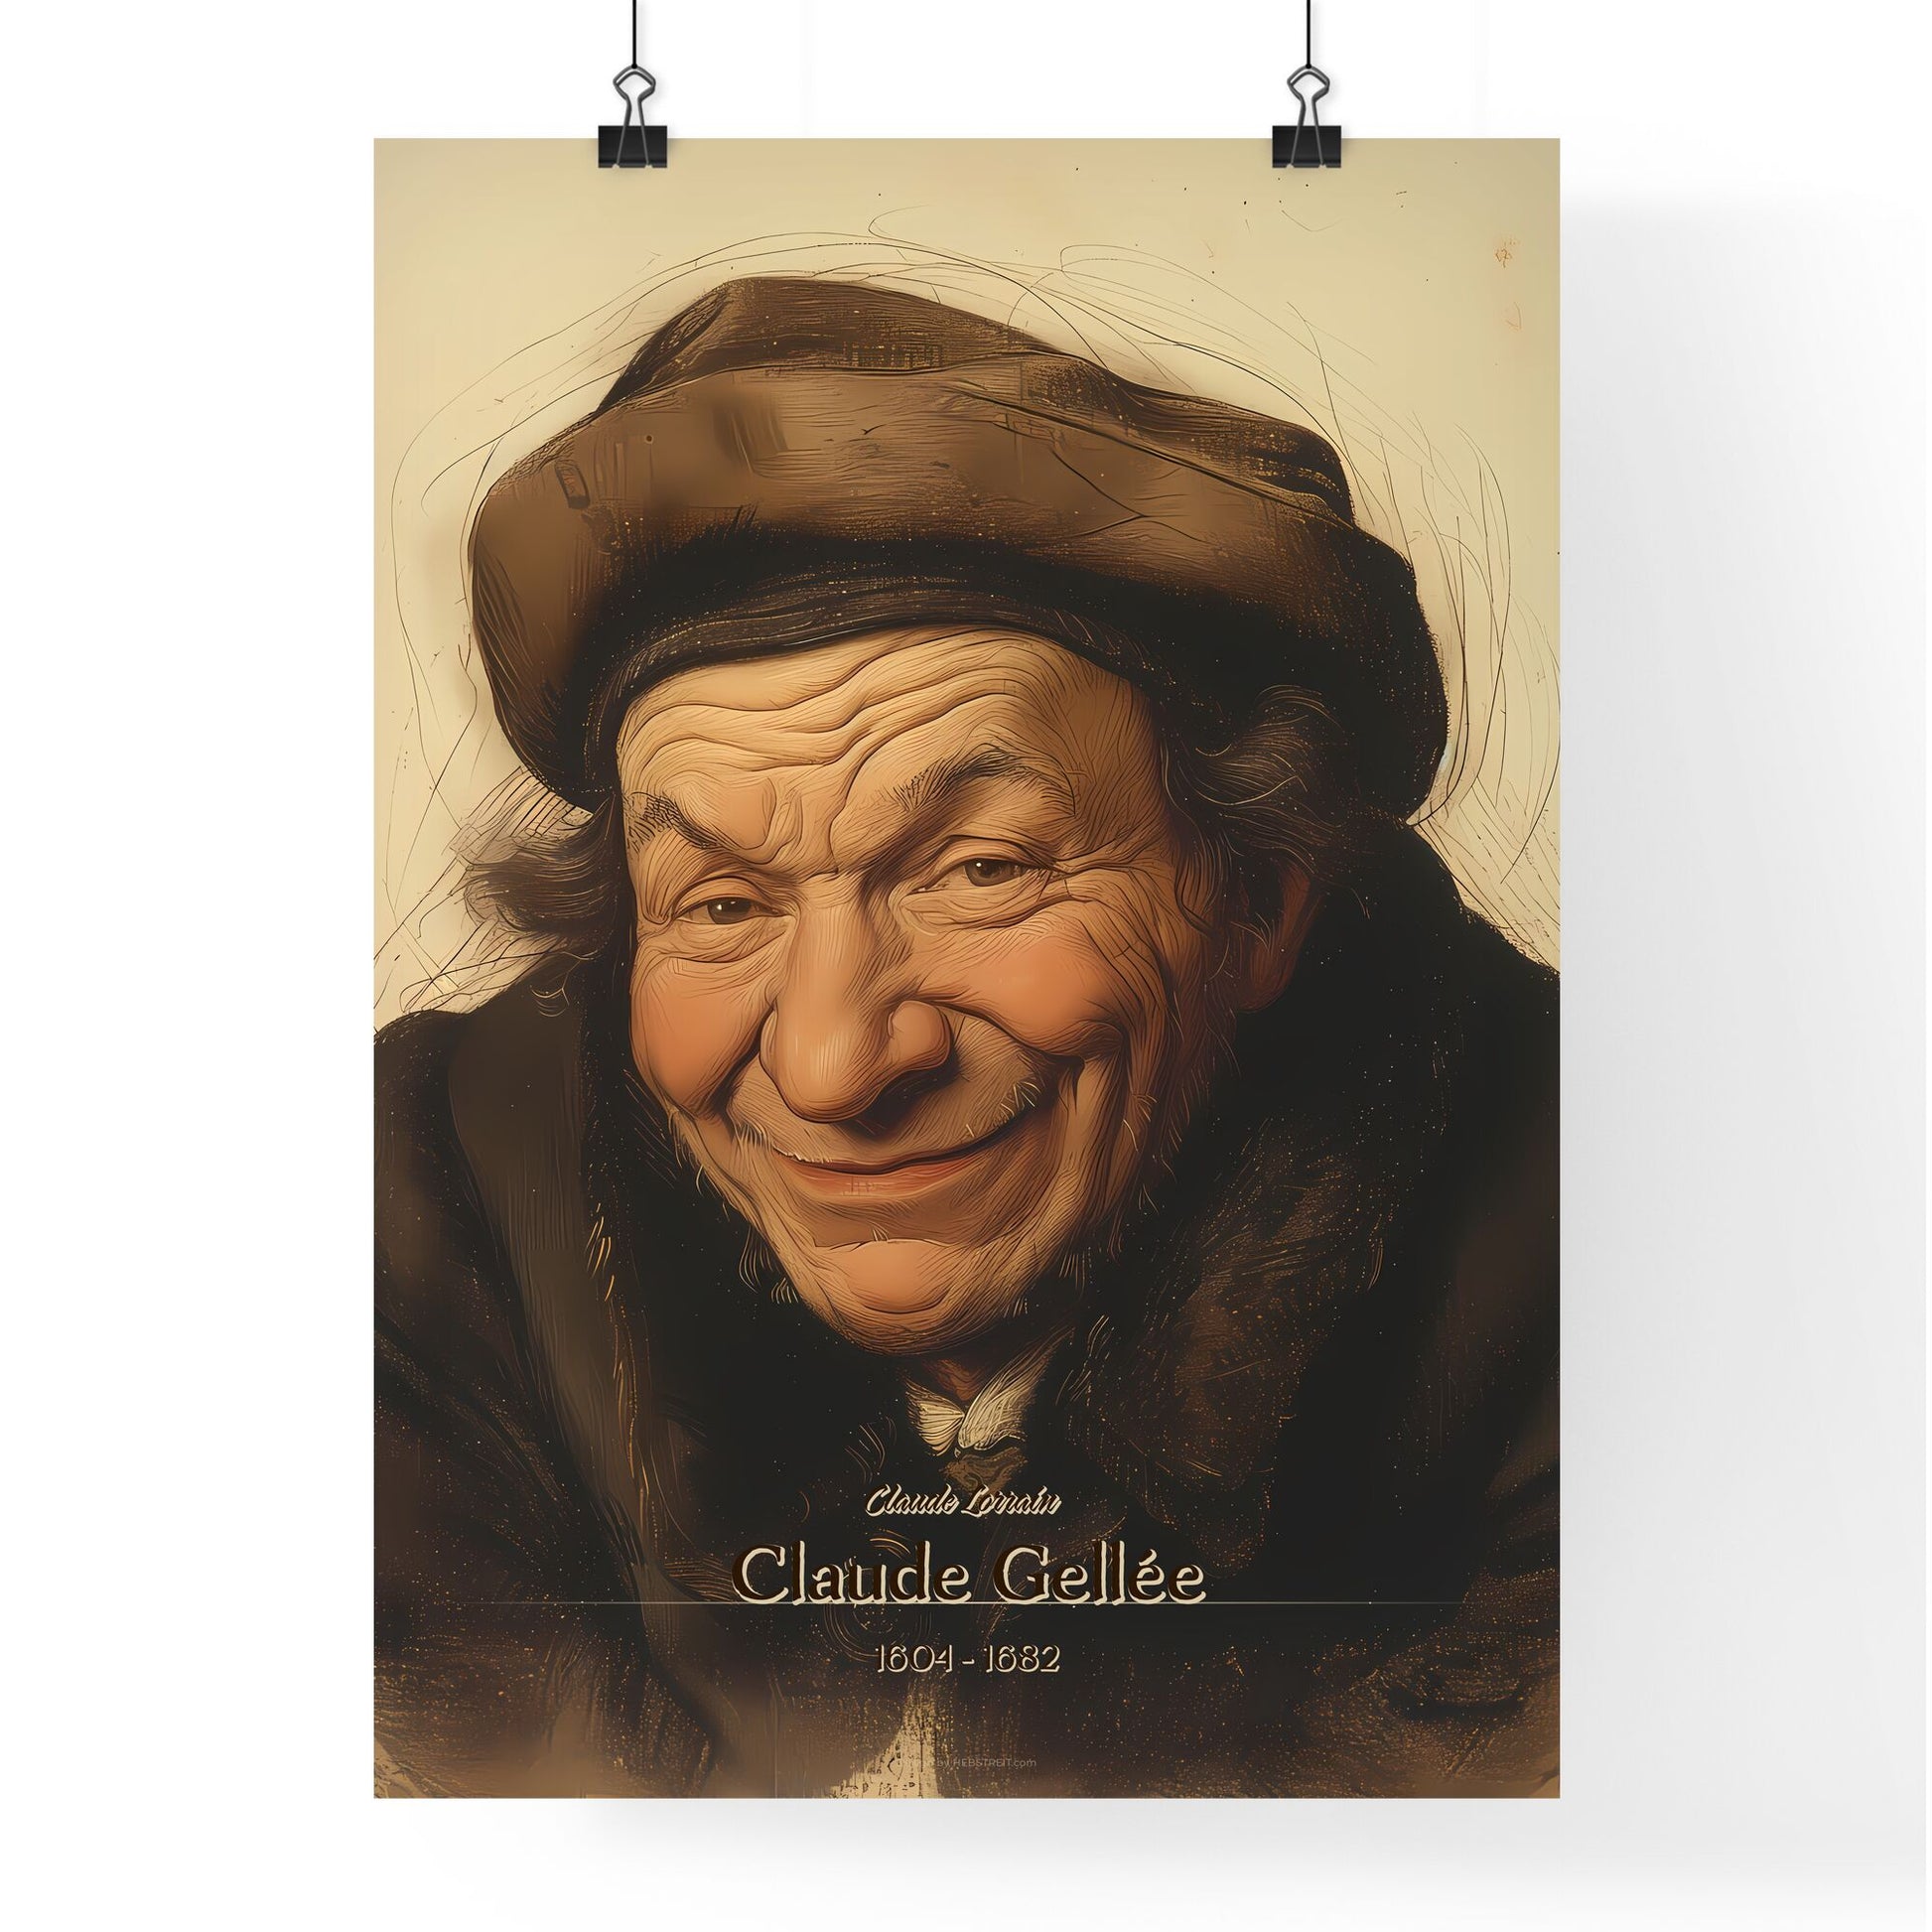 Claude Lorrain, Claude Gellée, 1604 - 1682, A Poster of a man wearing a hat Default Title